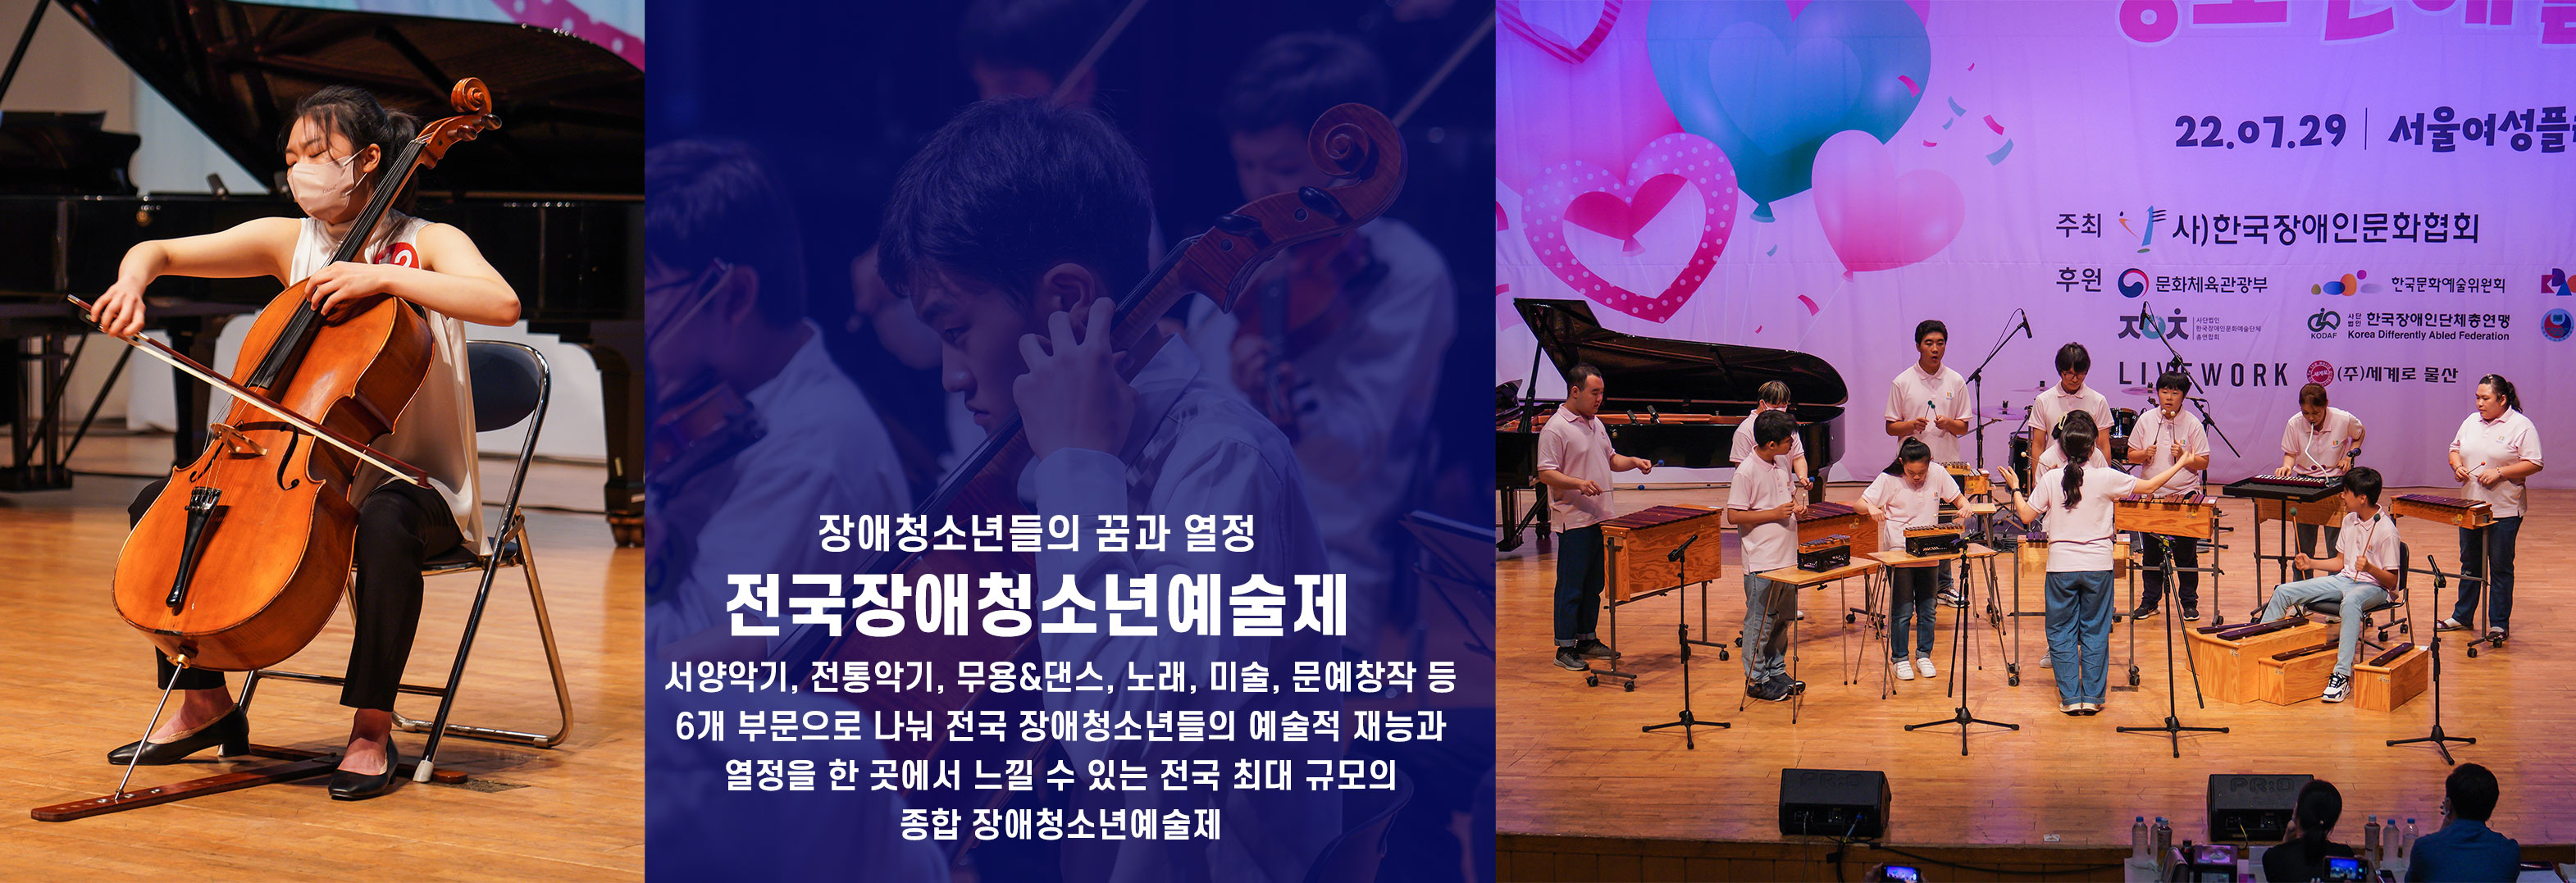 사)한국장애인문화협회 핵심사업을 소개합니다.